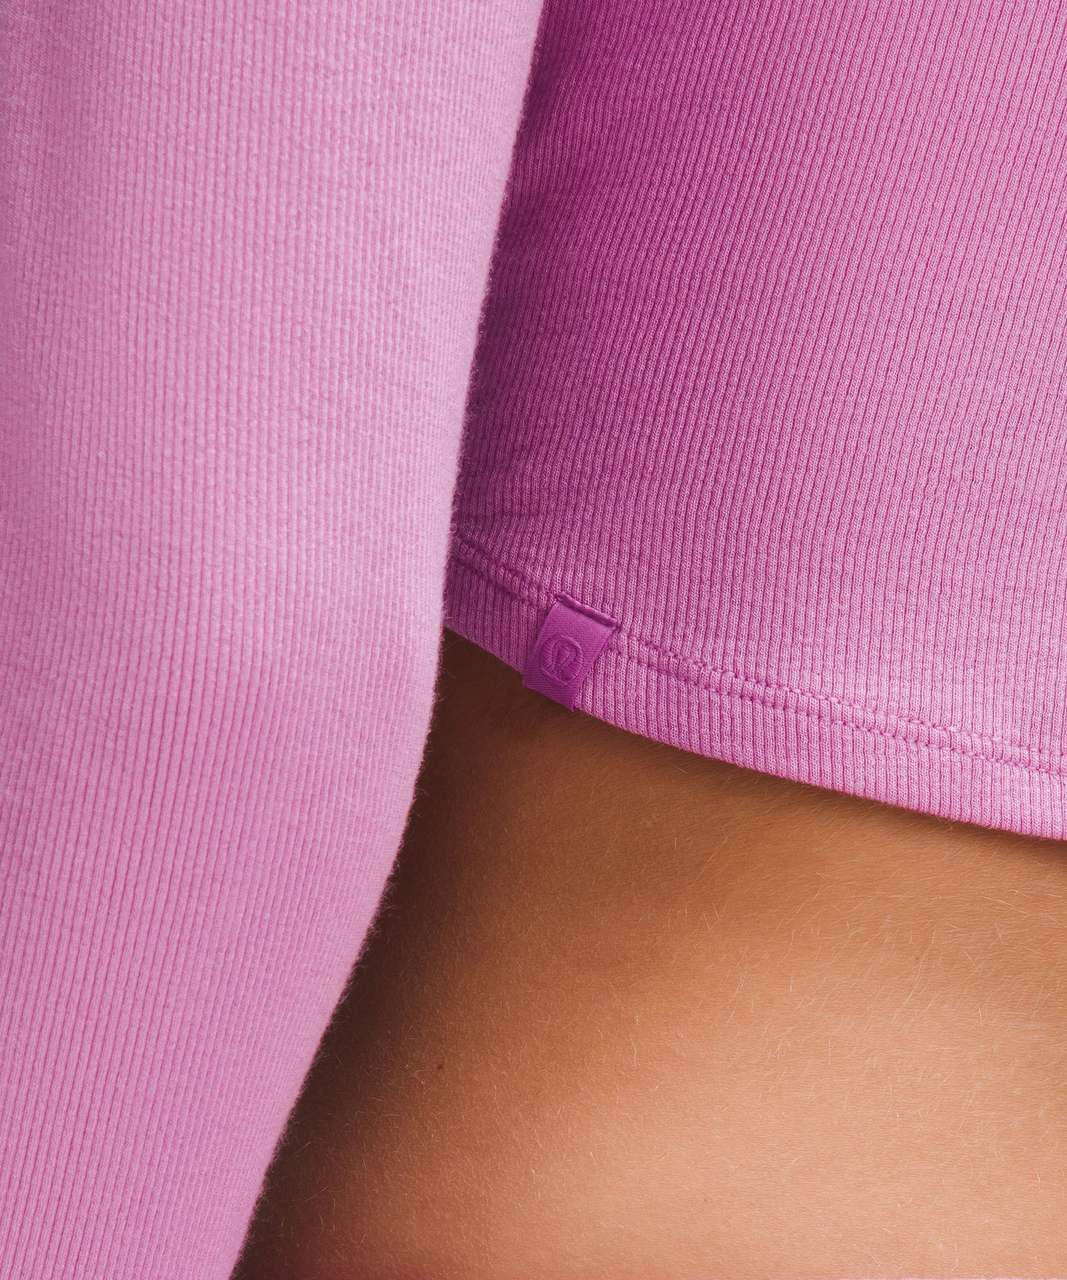 Lululemon Hold Tight Cropped Long-Sleeve Shirt - Dahlia Mauve